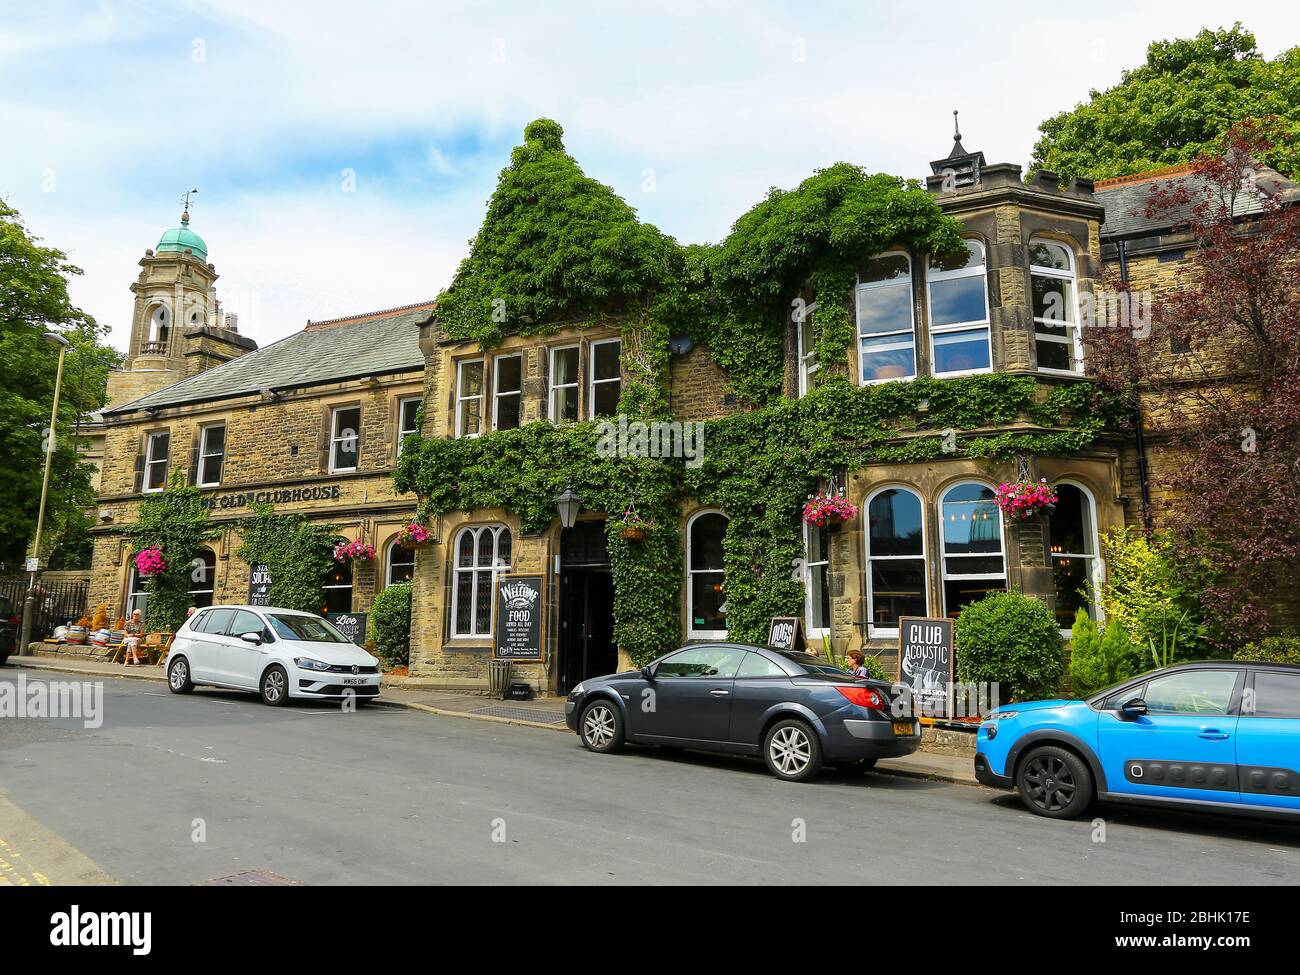 Le Old Clubhouse, un club de messieurs de Victoria, a transformé le pub sportif, Buxton, Derbyshire, Angleterre, Royaume-Uni Banque D'Images